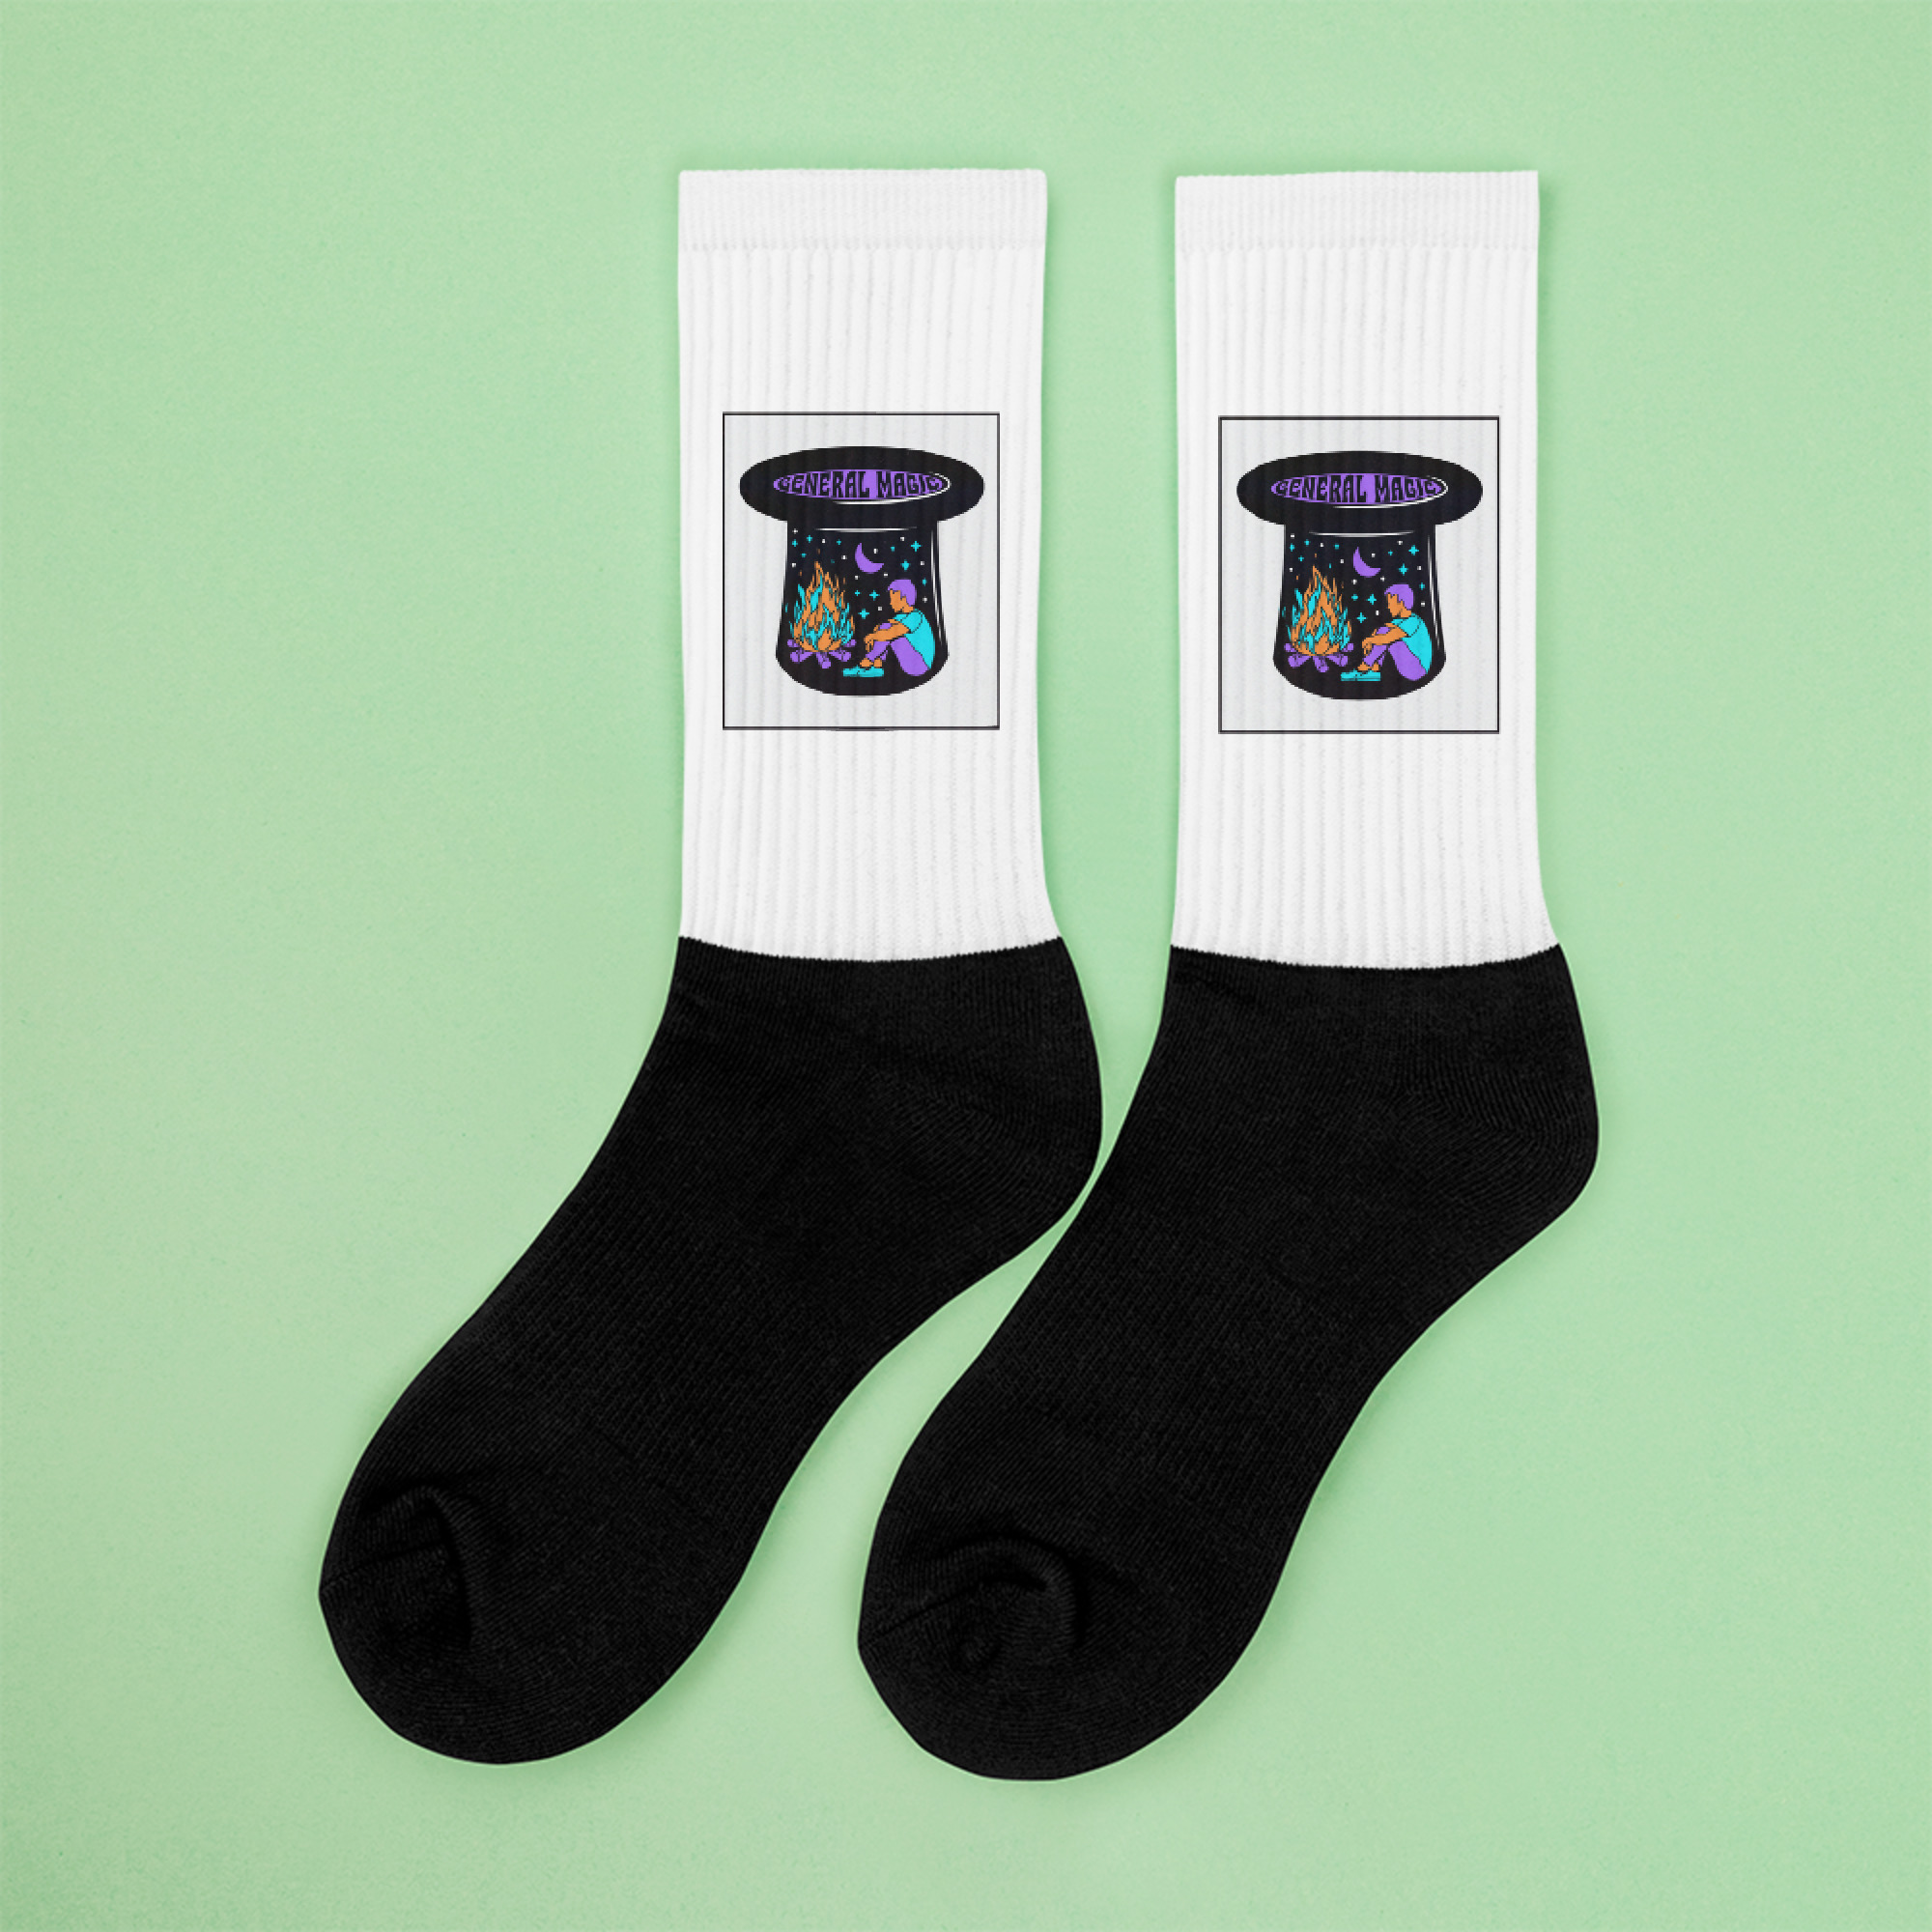 black-foot-sublimated-socks-left-632350af587c5.jpg